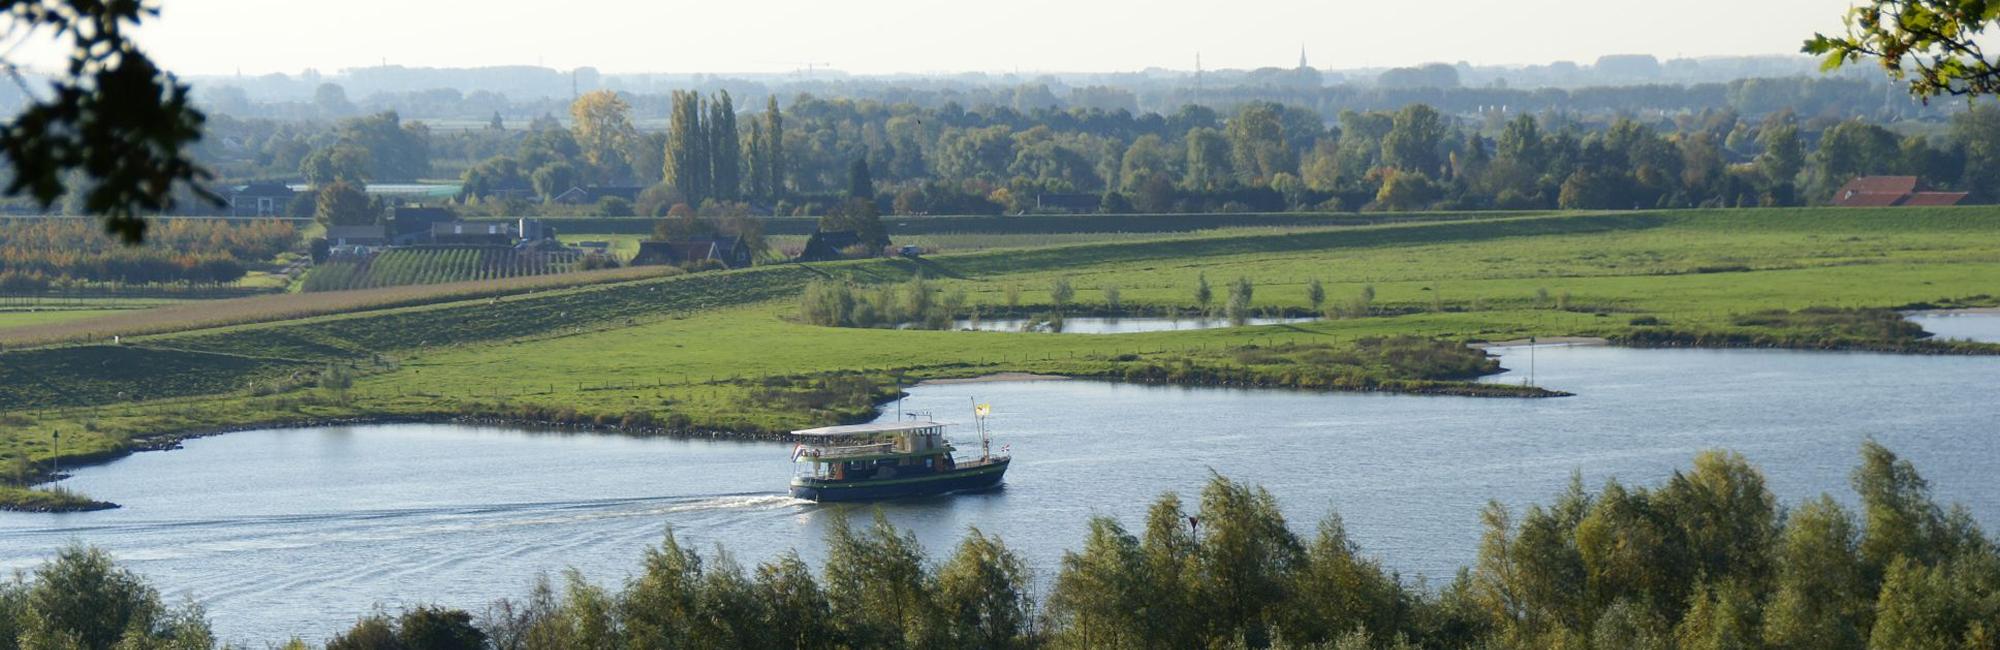 Fietsvakantie Nederland - Hollandse Rijn - van Arnhem naar Rotterdam fietsen